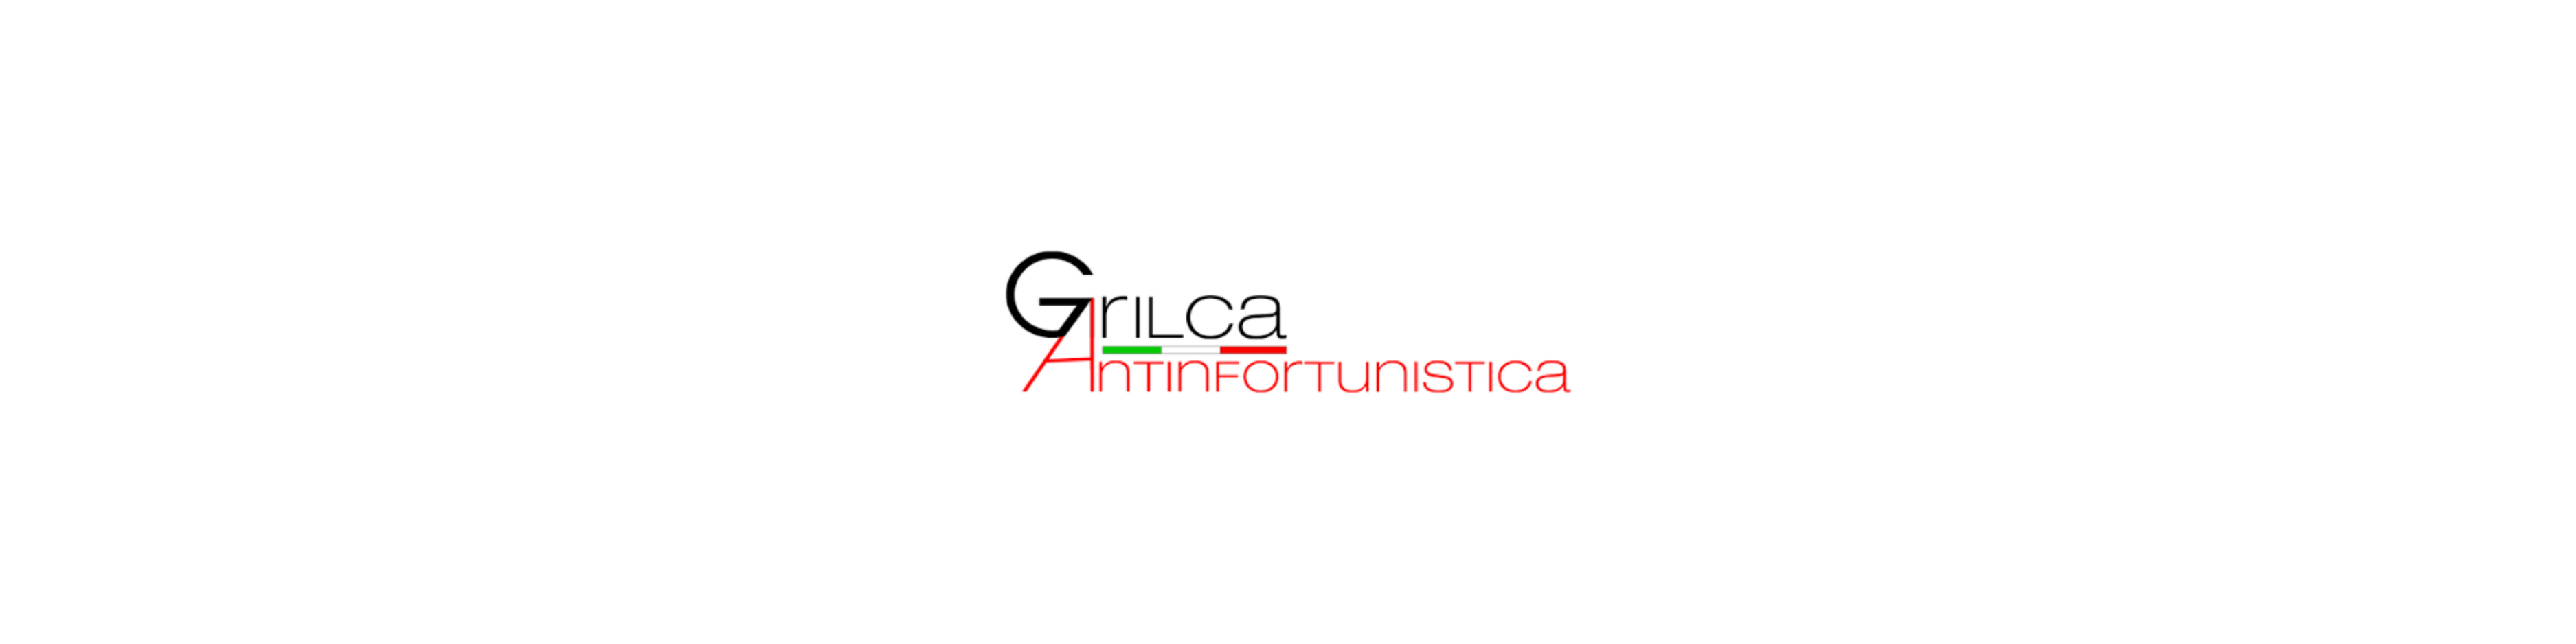 Grilca (In promozione)